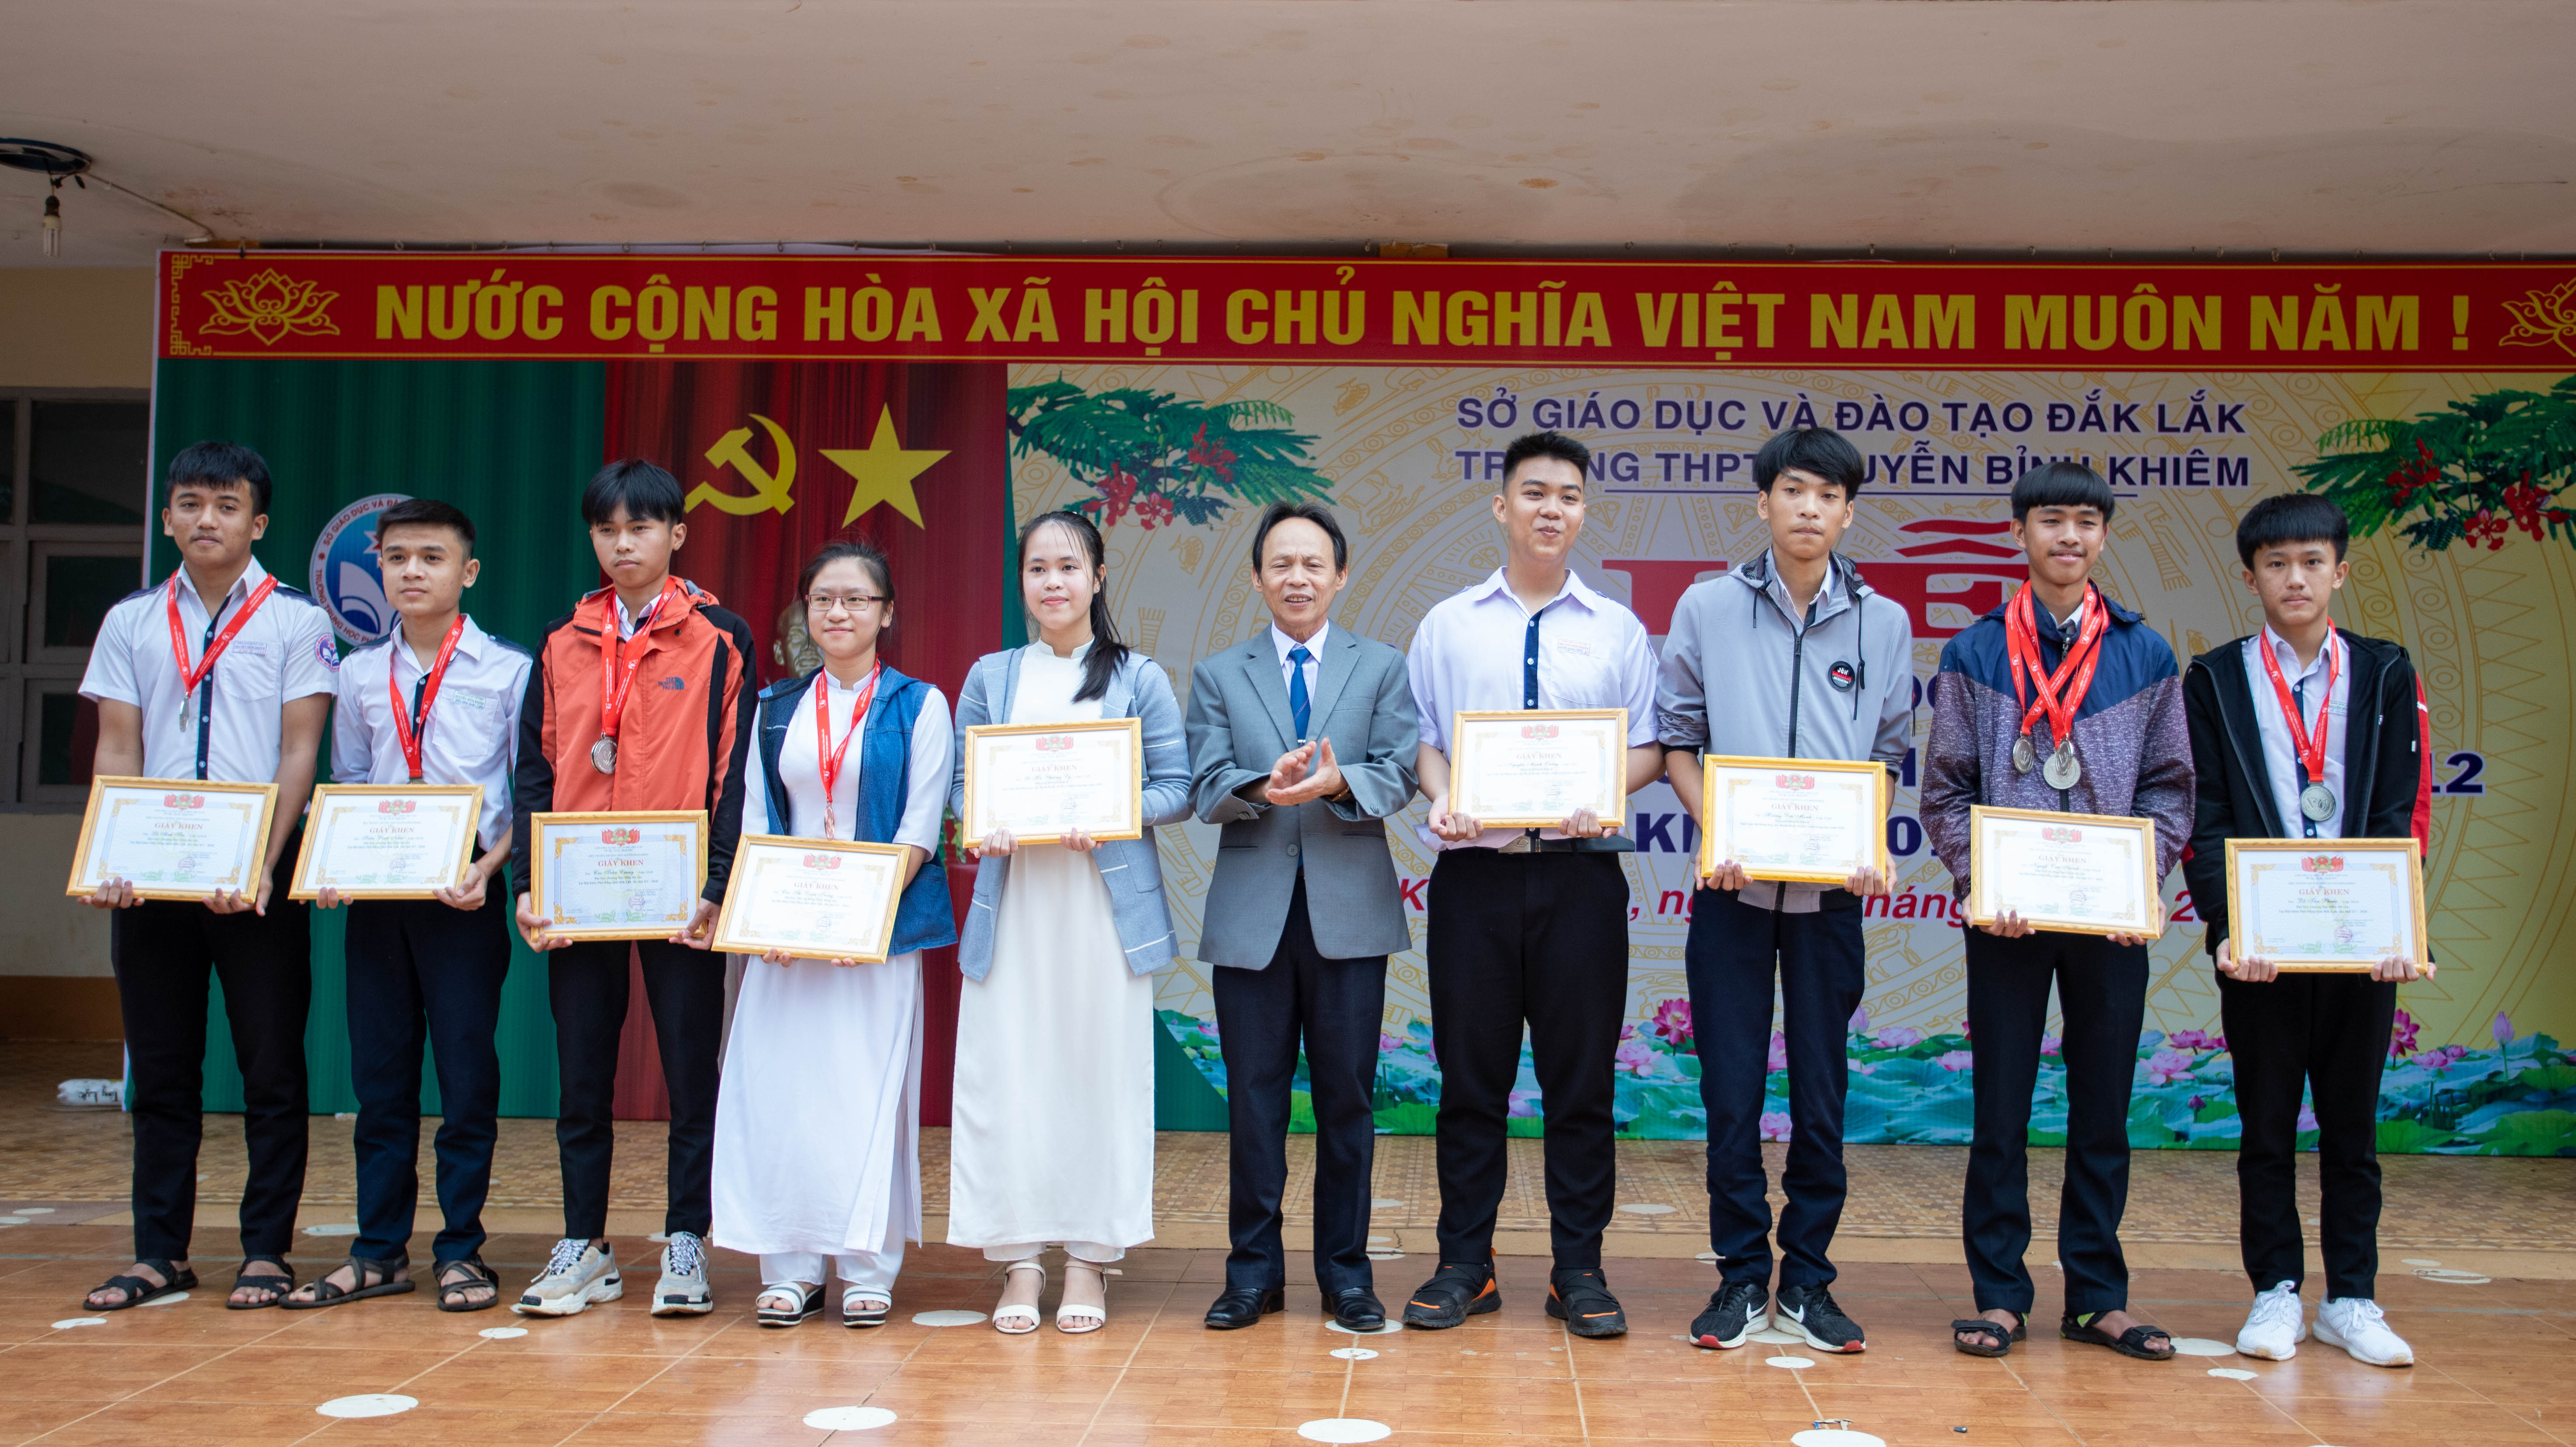 Thầy giáo Nguyễn Thanh Tùng - Phó Hiệu trưởng trao huy chương và Giấy khen cho các em học sinh